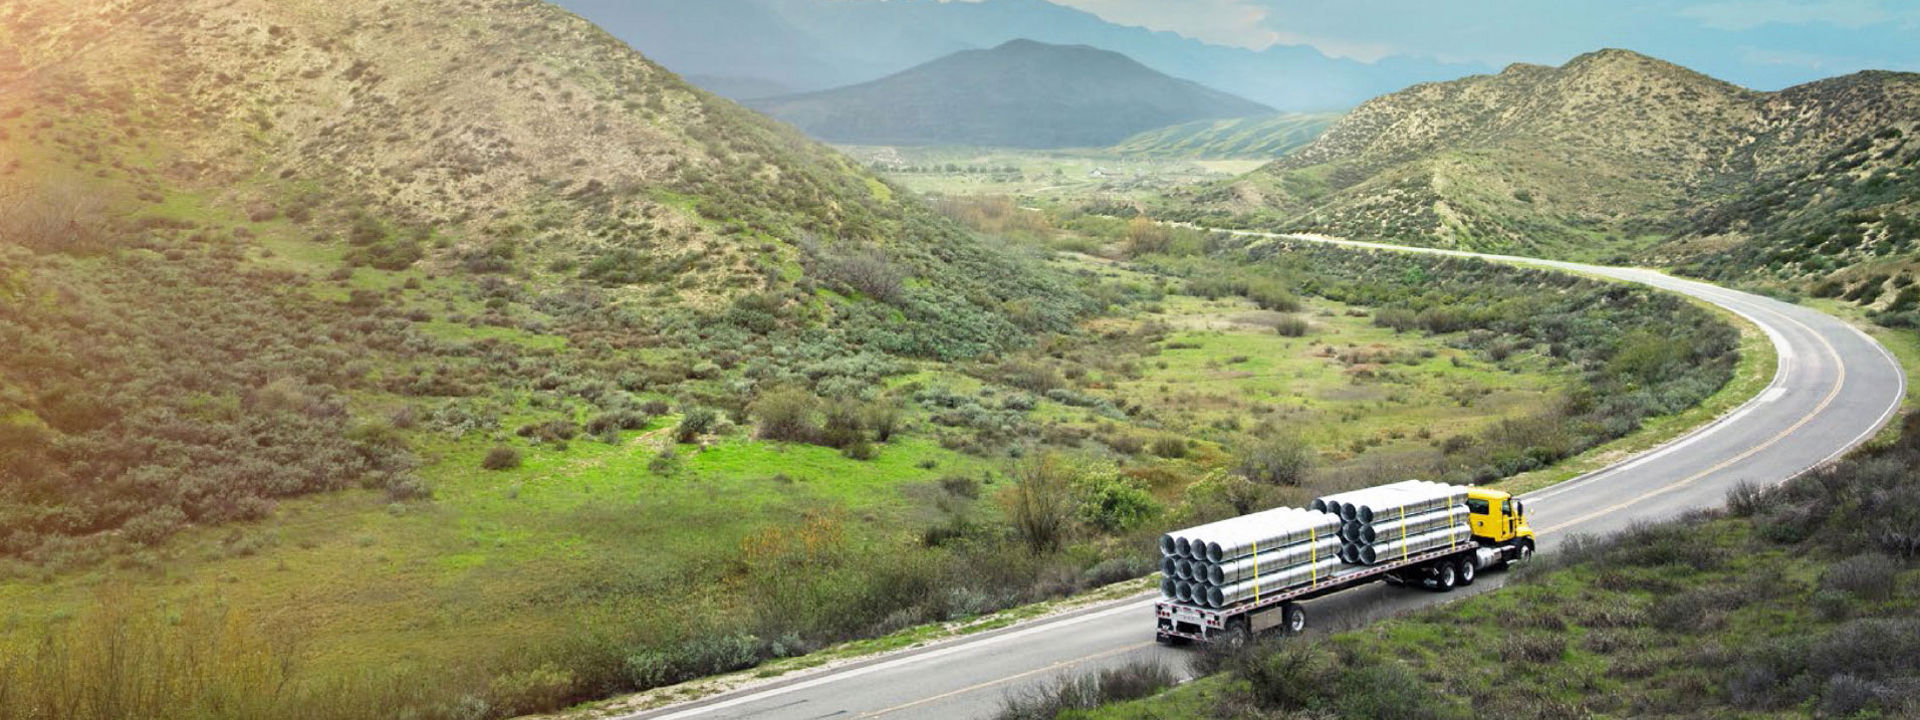 Esta imagen muestra una vista lateral de una flota comercial circulando por la carretera con neumáticos de camión Bridgestone.